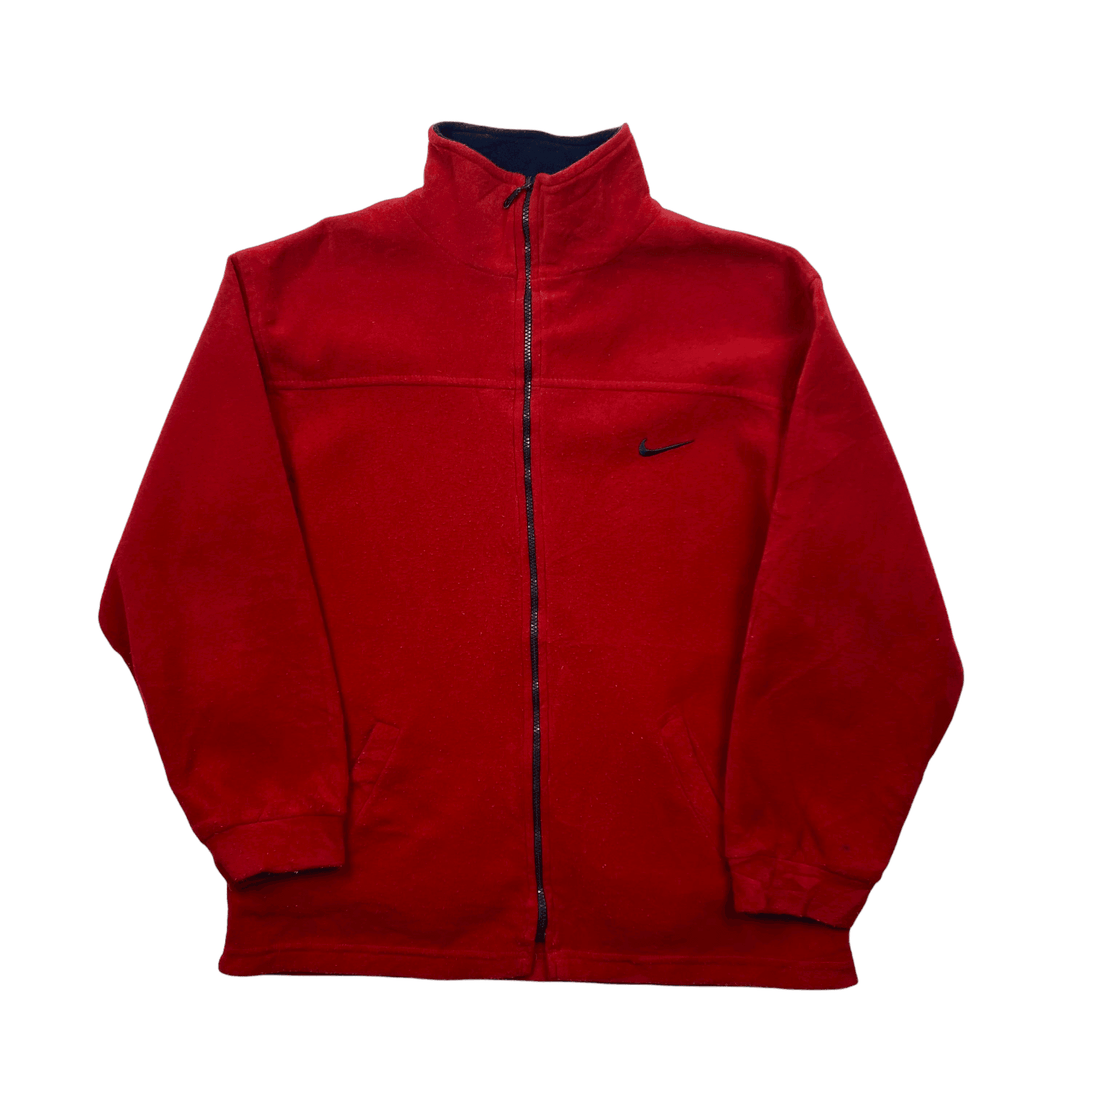 Vintage 90s Red Nike Full Zip Fleece - Large - The Streetwear Studio